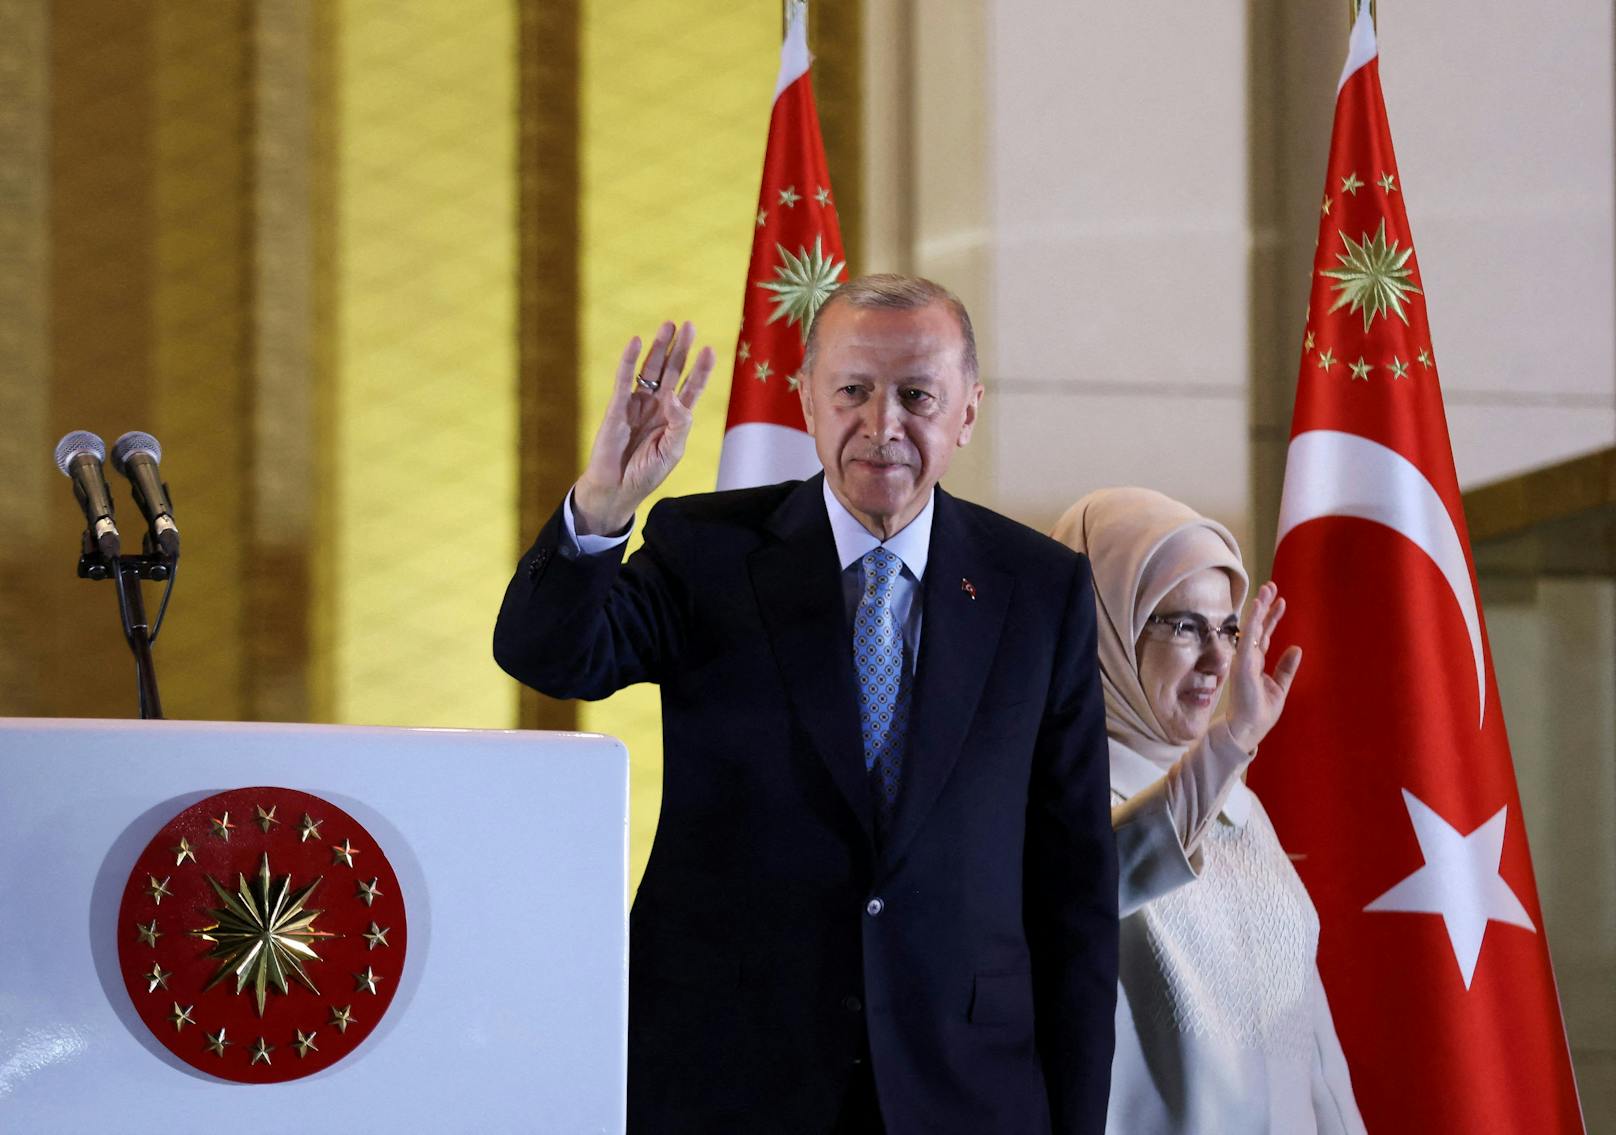 Der alte Neue: <a data-li-document-ref="100273560" href="https://www.heute.at/g/knappes-rennen-erdogan-setzt-sich-in-tuerkei-wahl-durch-100273560">Recep Tayyip Erdogan</a>, hier an der Seite seiner Frau Ermine, bleibt türkischer Präsident.